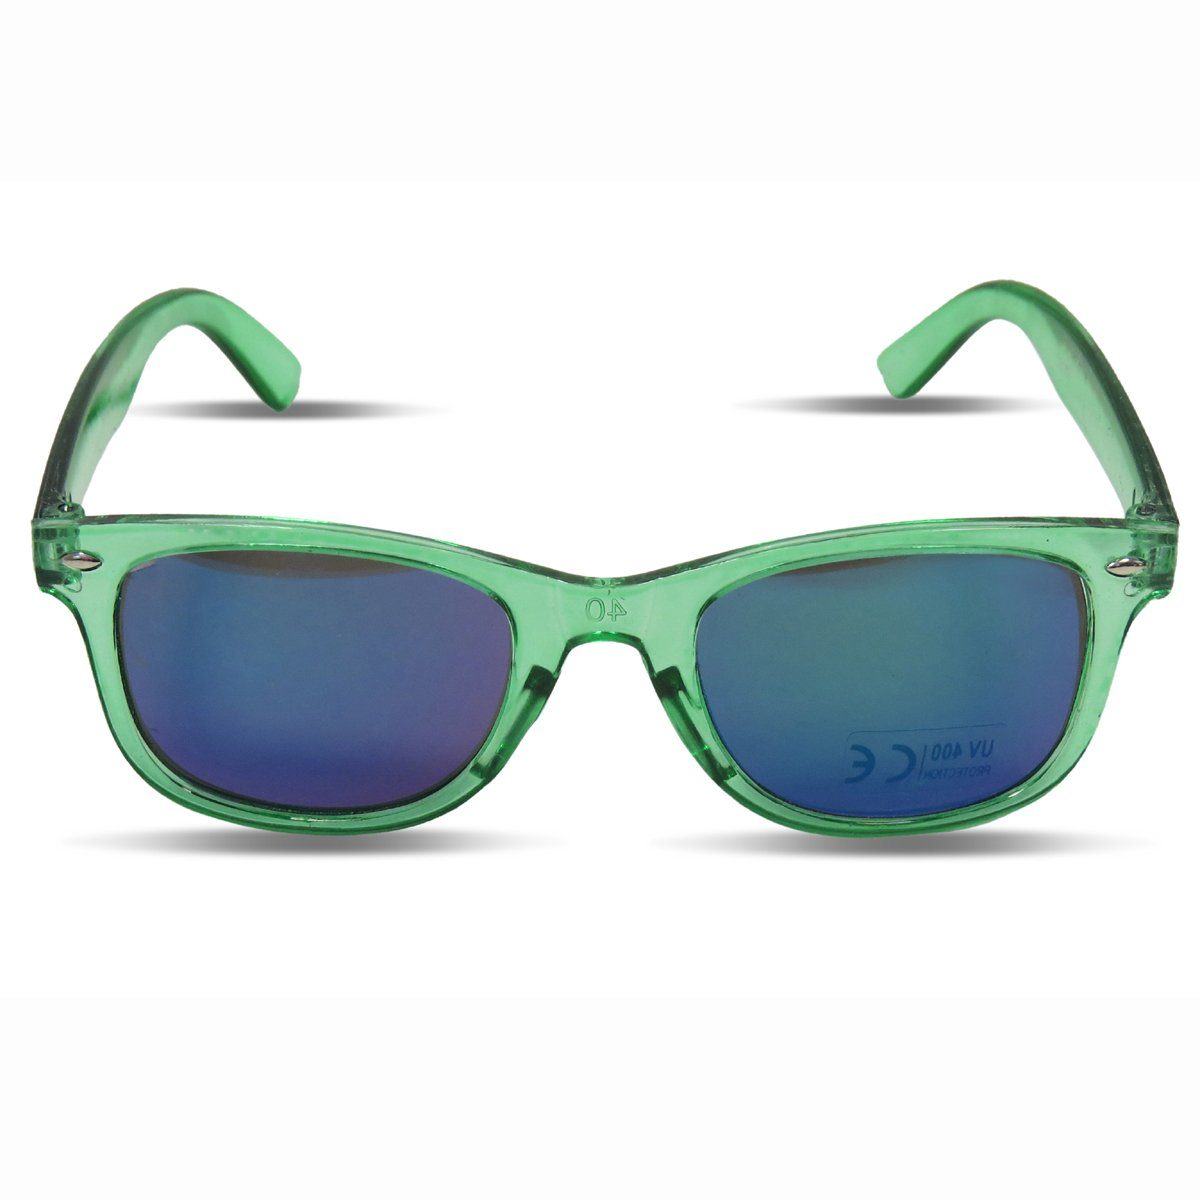 Sonia Originelli Sonnenbrille Kinder Sonnenbrille "Kids Style" Verspiegelt Brille Transparent Onesize gruen